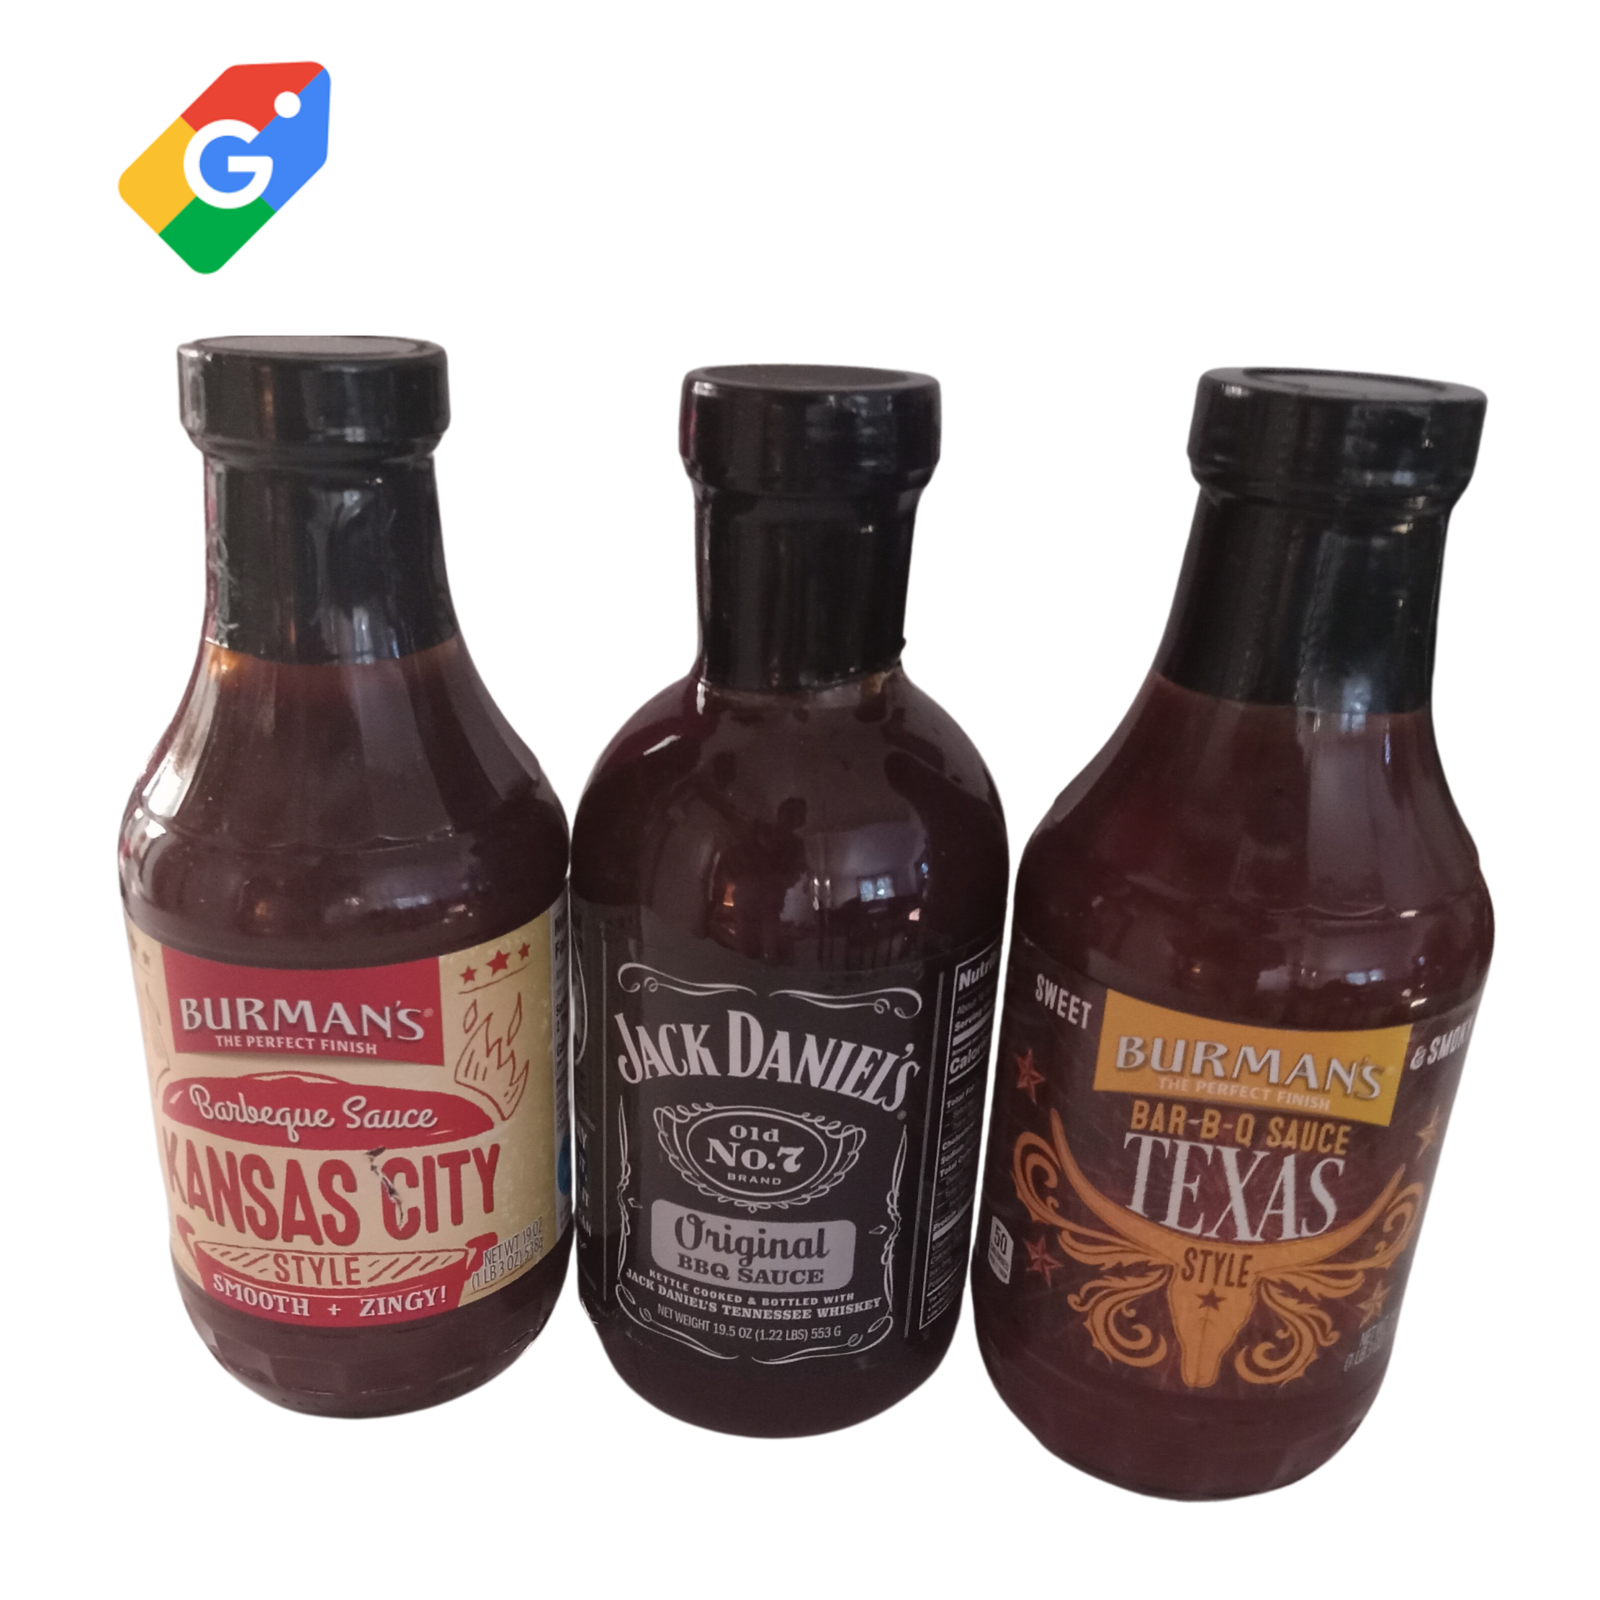 Jack Daniels Bbq Sauce Original, Burnams Kansas City, & Burman's Texas Bbq Sauce - $24.00